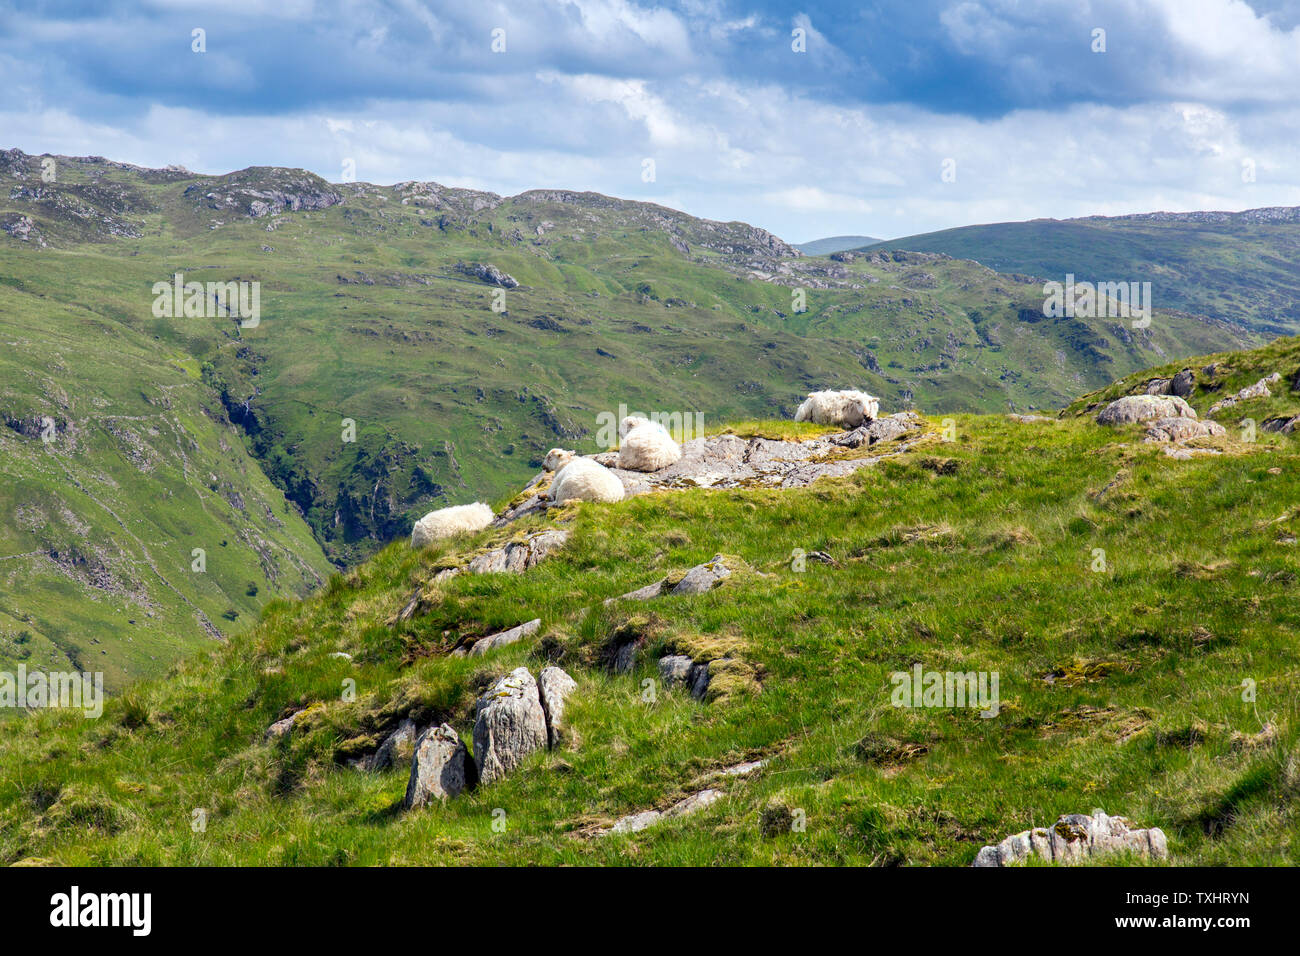 Welsh Mountain Schafe in thr Sonnenschein ruht auf warmen Felsen neben der Bergleute, Snowdonia National Park, Gwynedd, Wales, Großbritannien Stockfoto